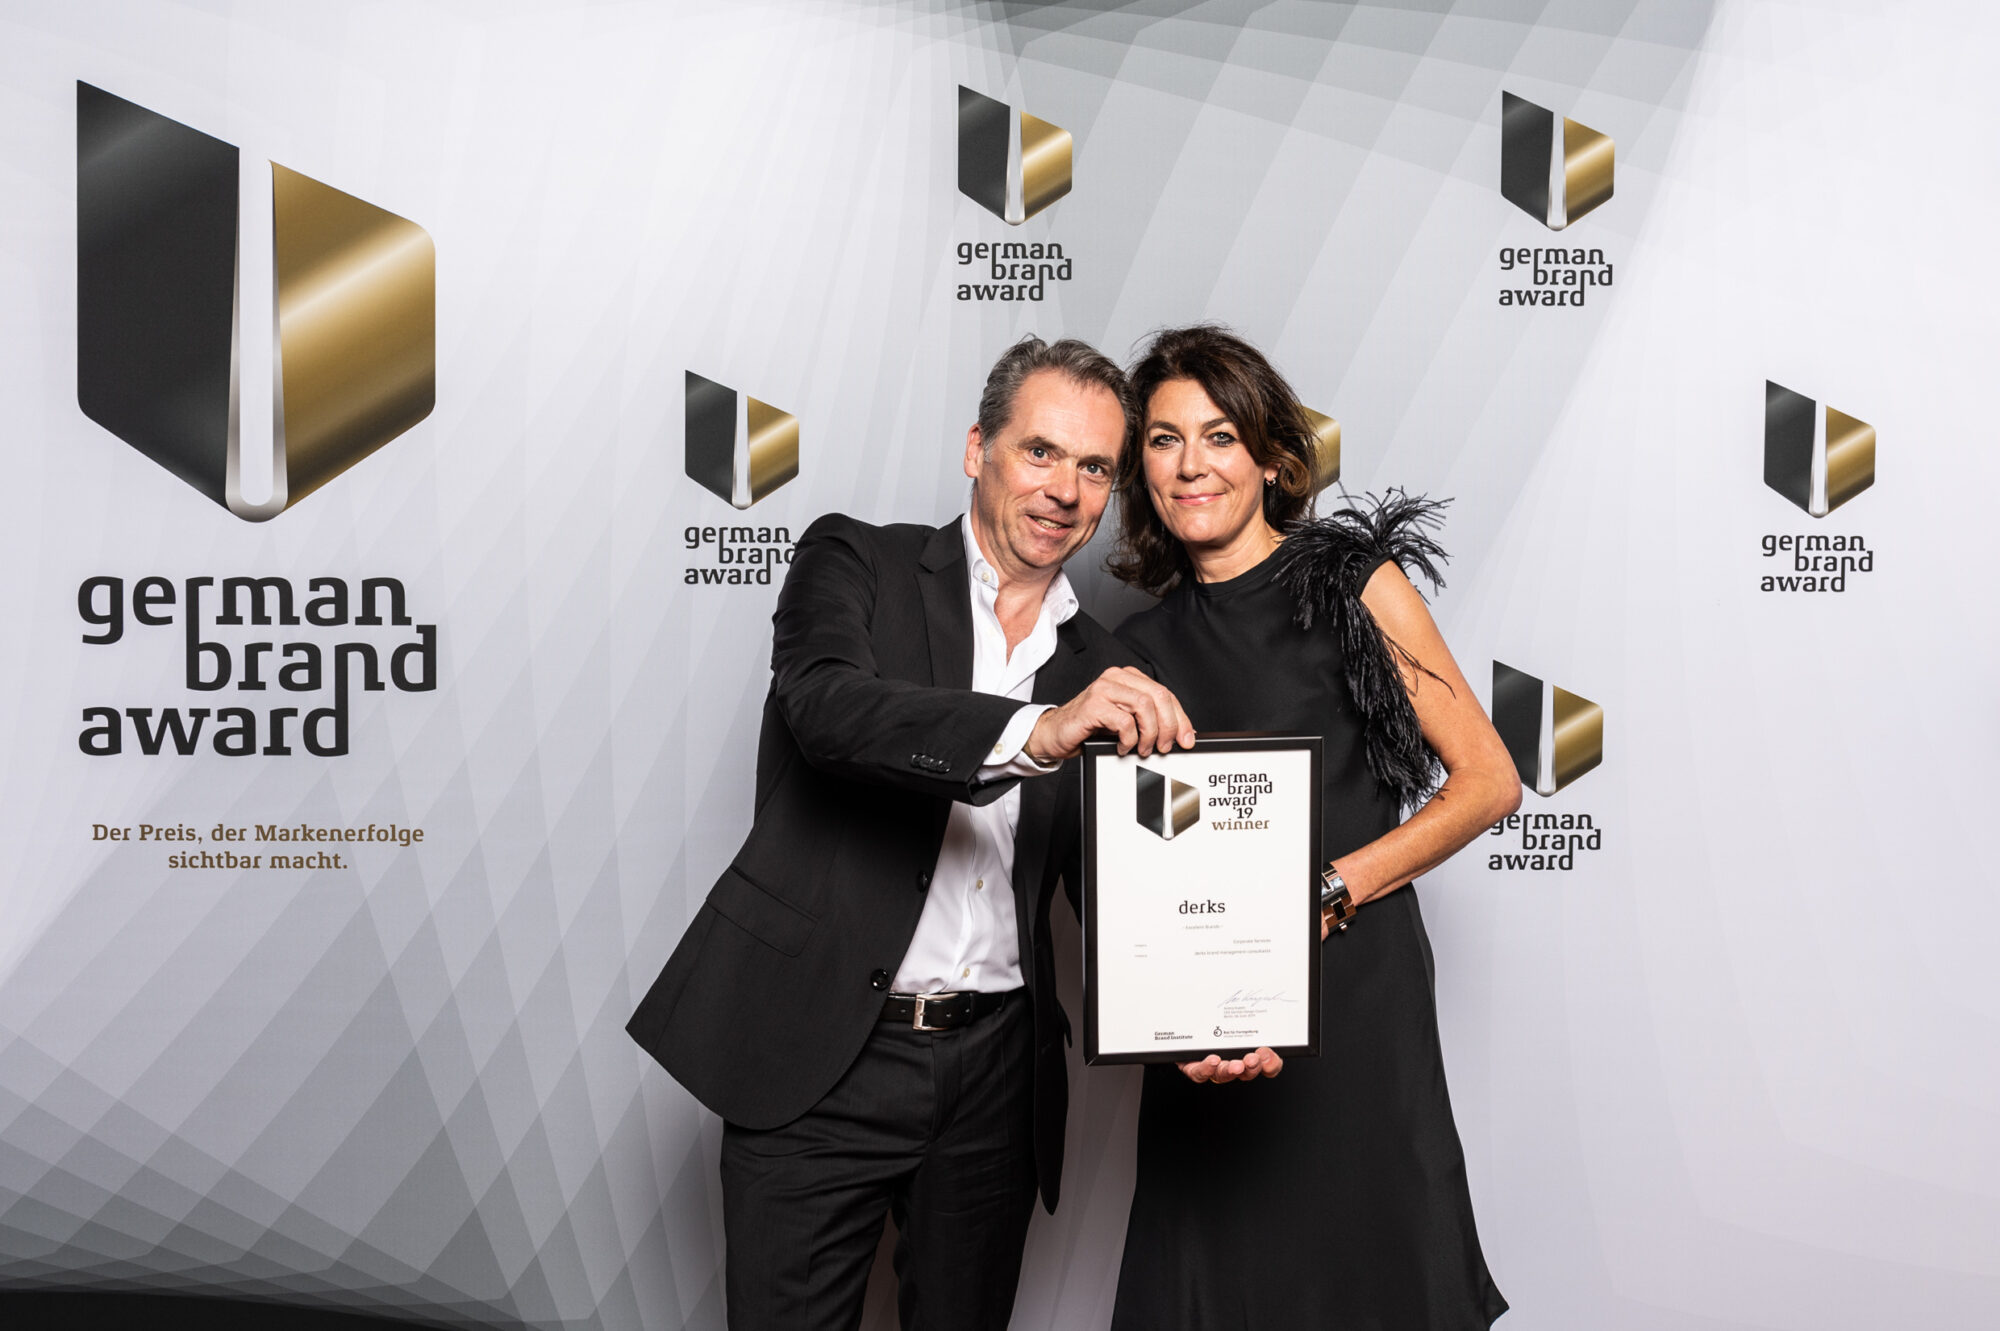 Firmengründer Hansgeorg Derks und Klaudia Meinert nehmen den German Brand Award für ihre ausgezeichnete Markenberatung in Berlin entgegen